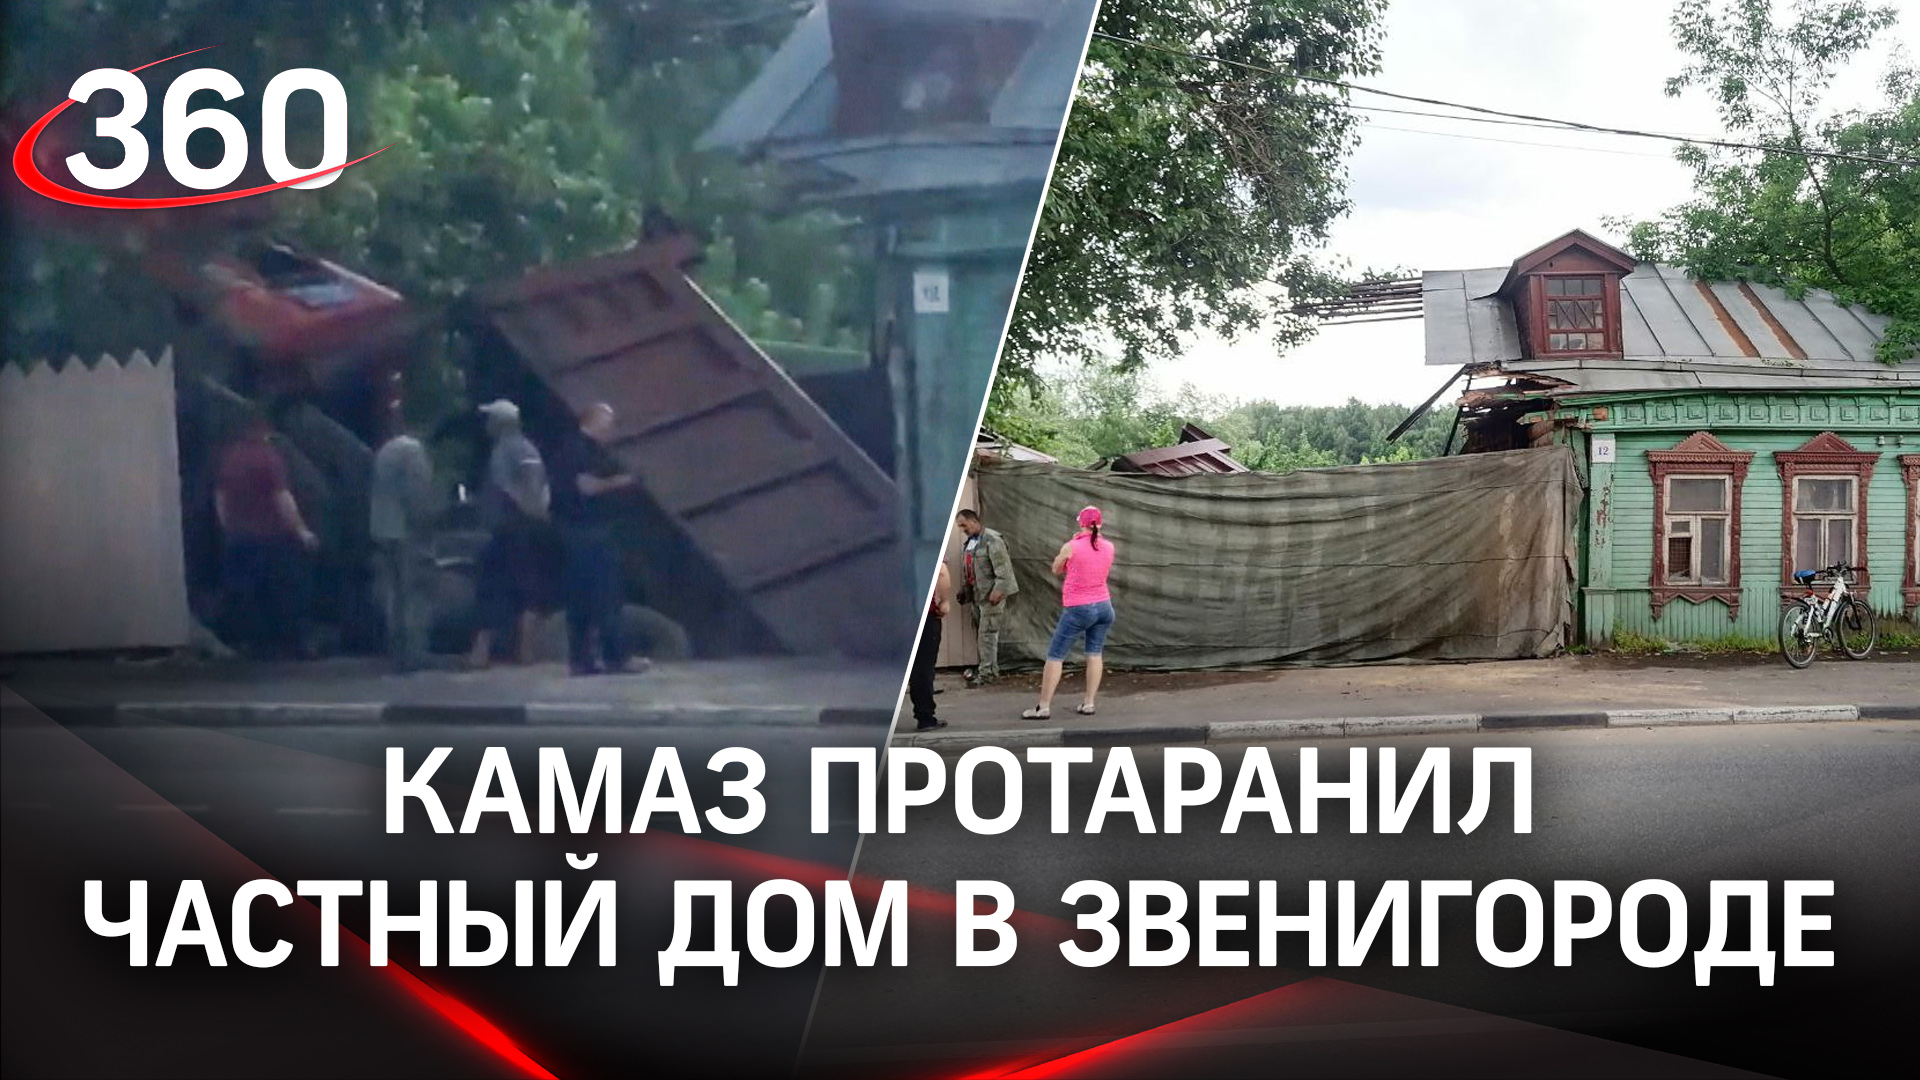 Видео: КАМАЗ таранит частный дом в Звенигороде